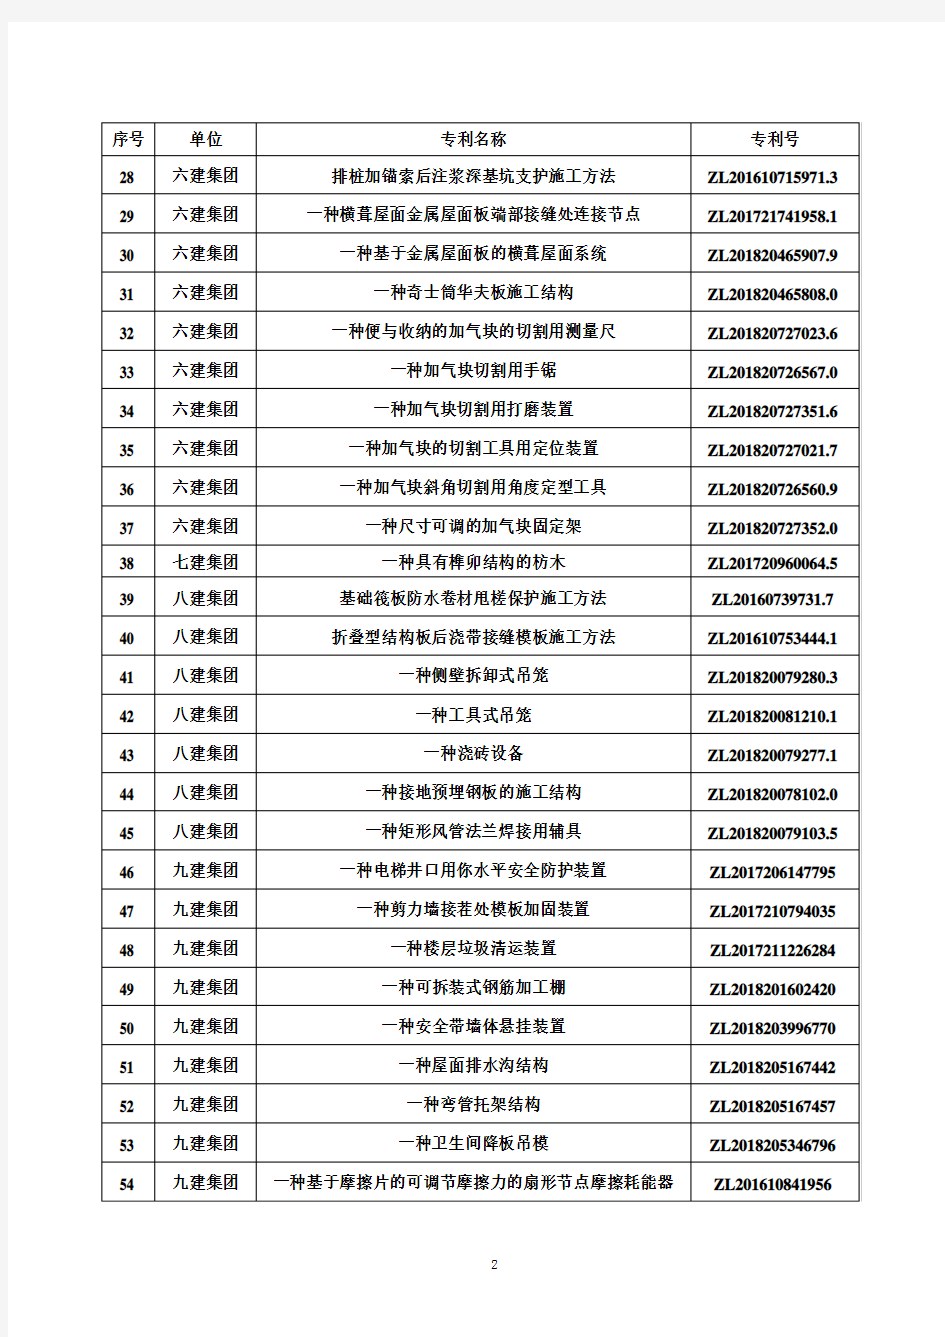 2018年陕西建工集团有限公司专利清单